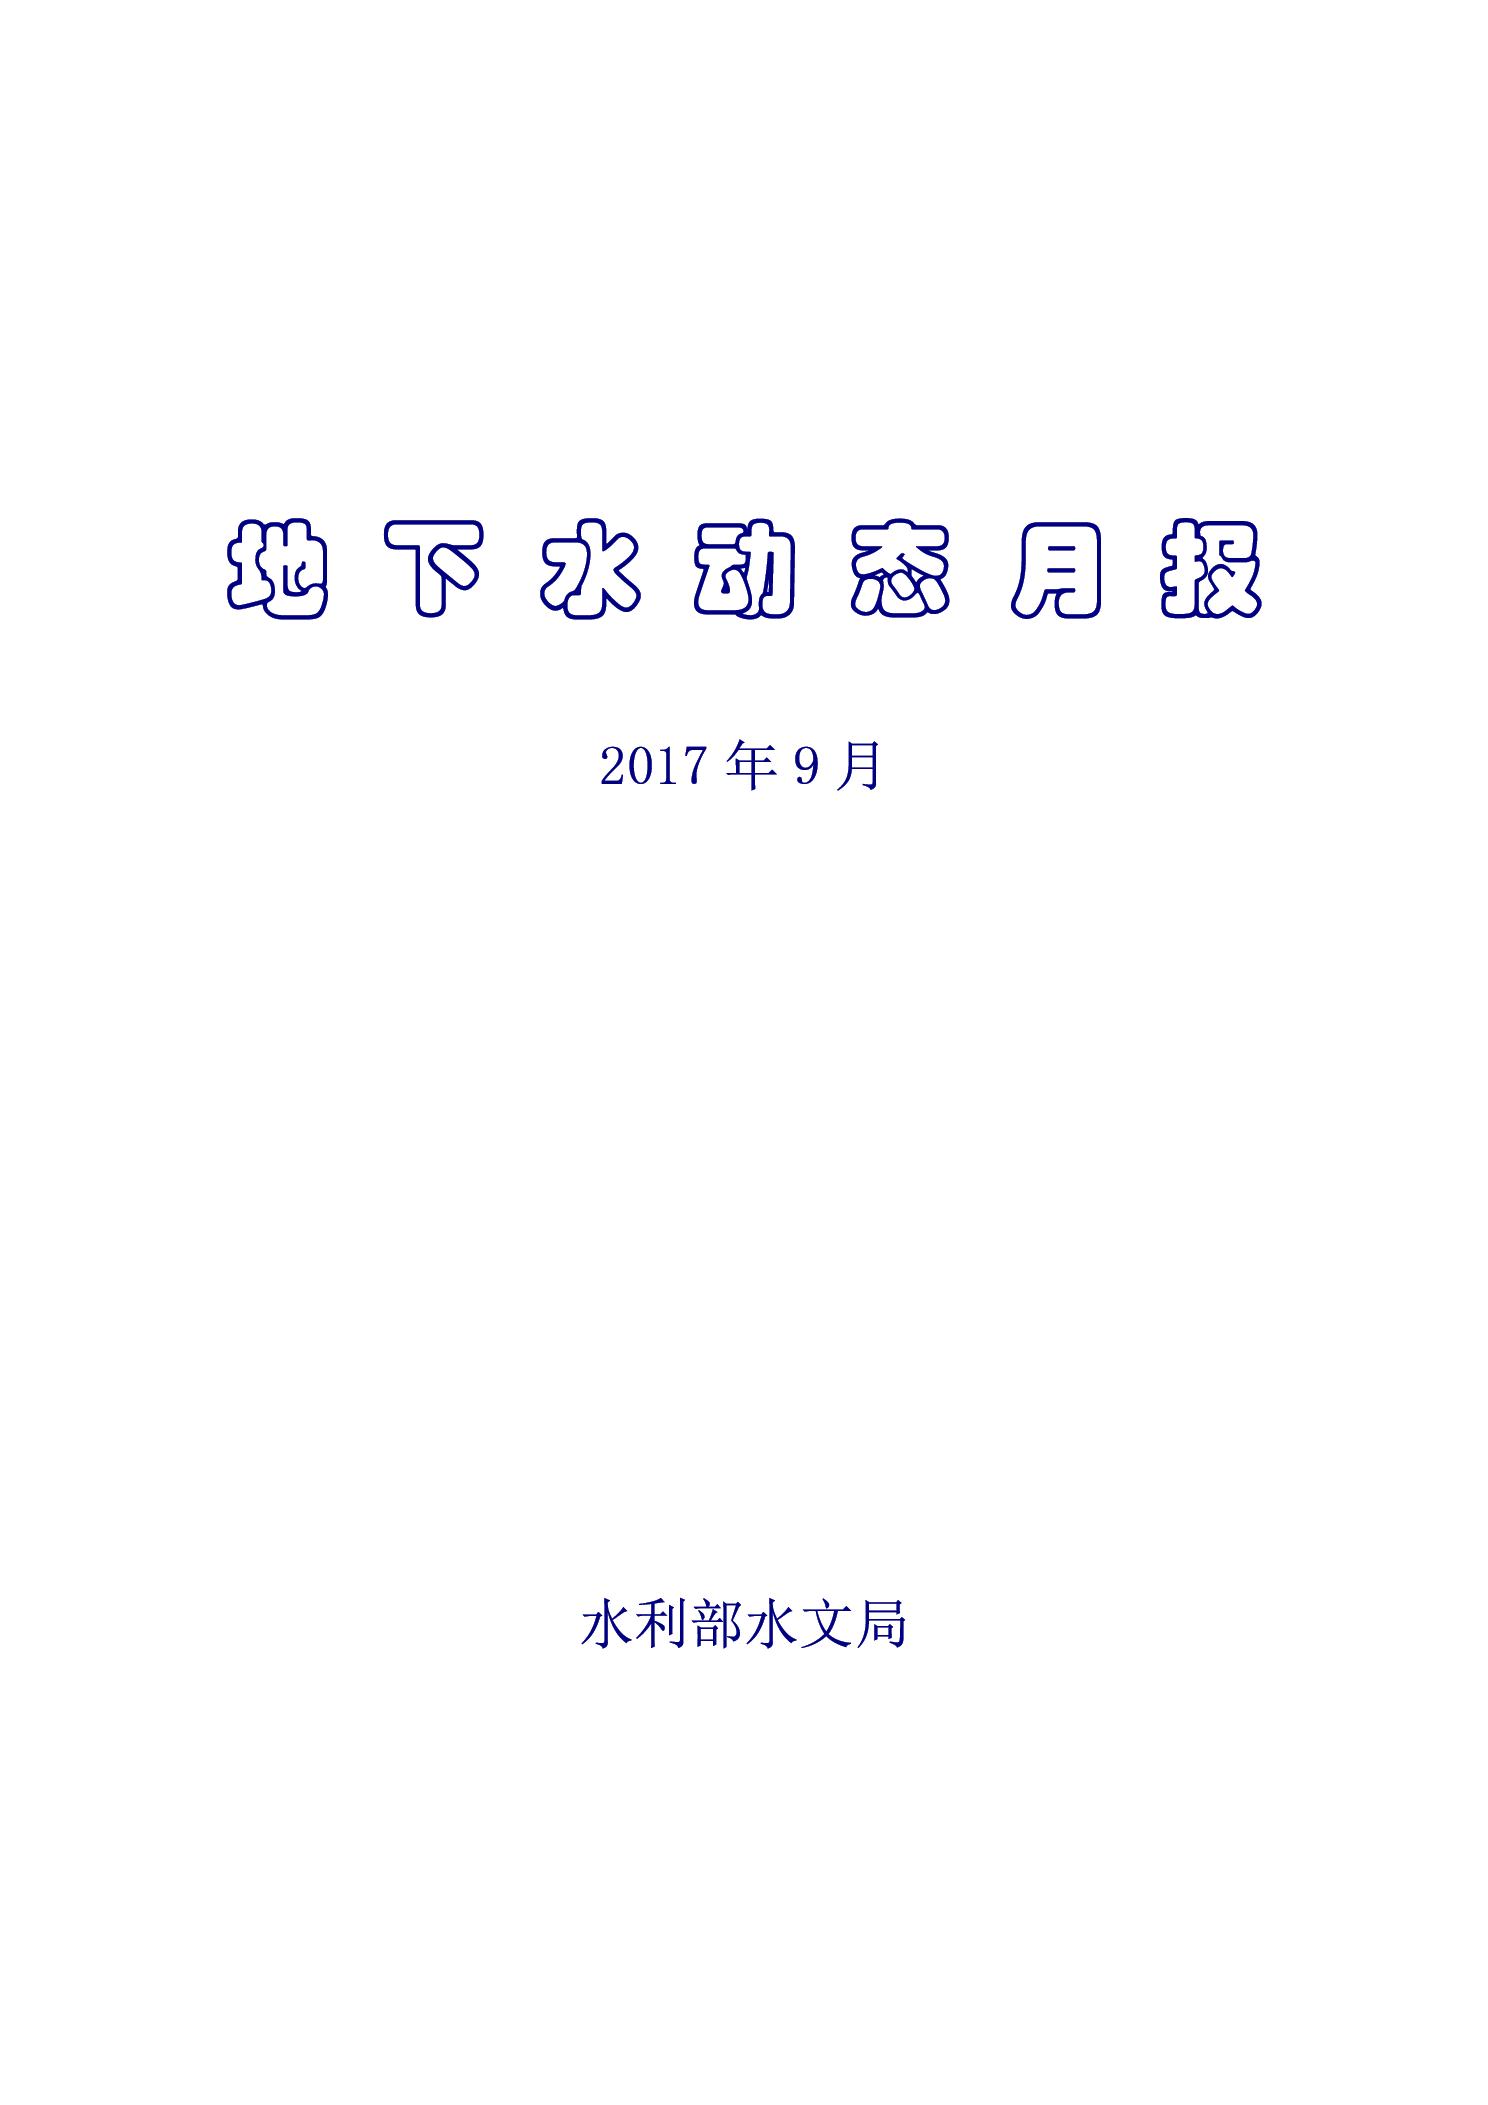 地下水月報2017_9-1.jpg